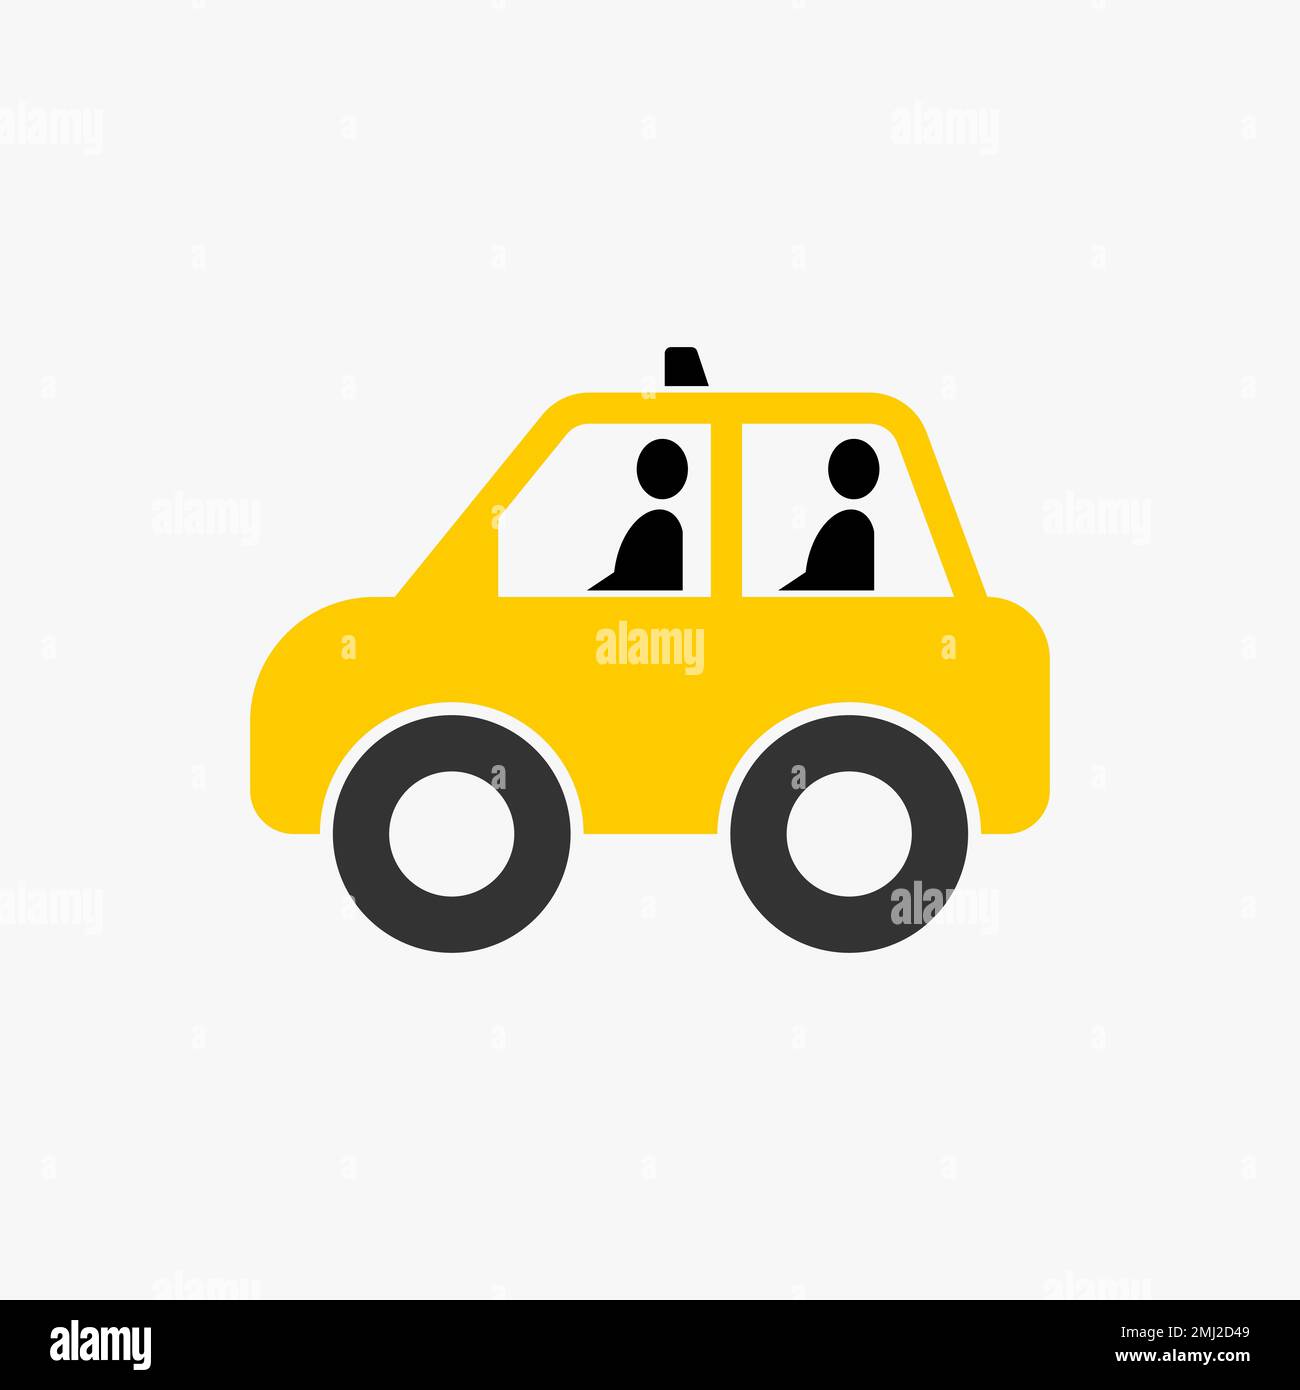 Simple y único mini pequeño coche de taxi con dos o cuatro pasajeros icono gráfico logotipo diseño concepto abstracto vector stock transporte o móvil Ilustración del Vector